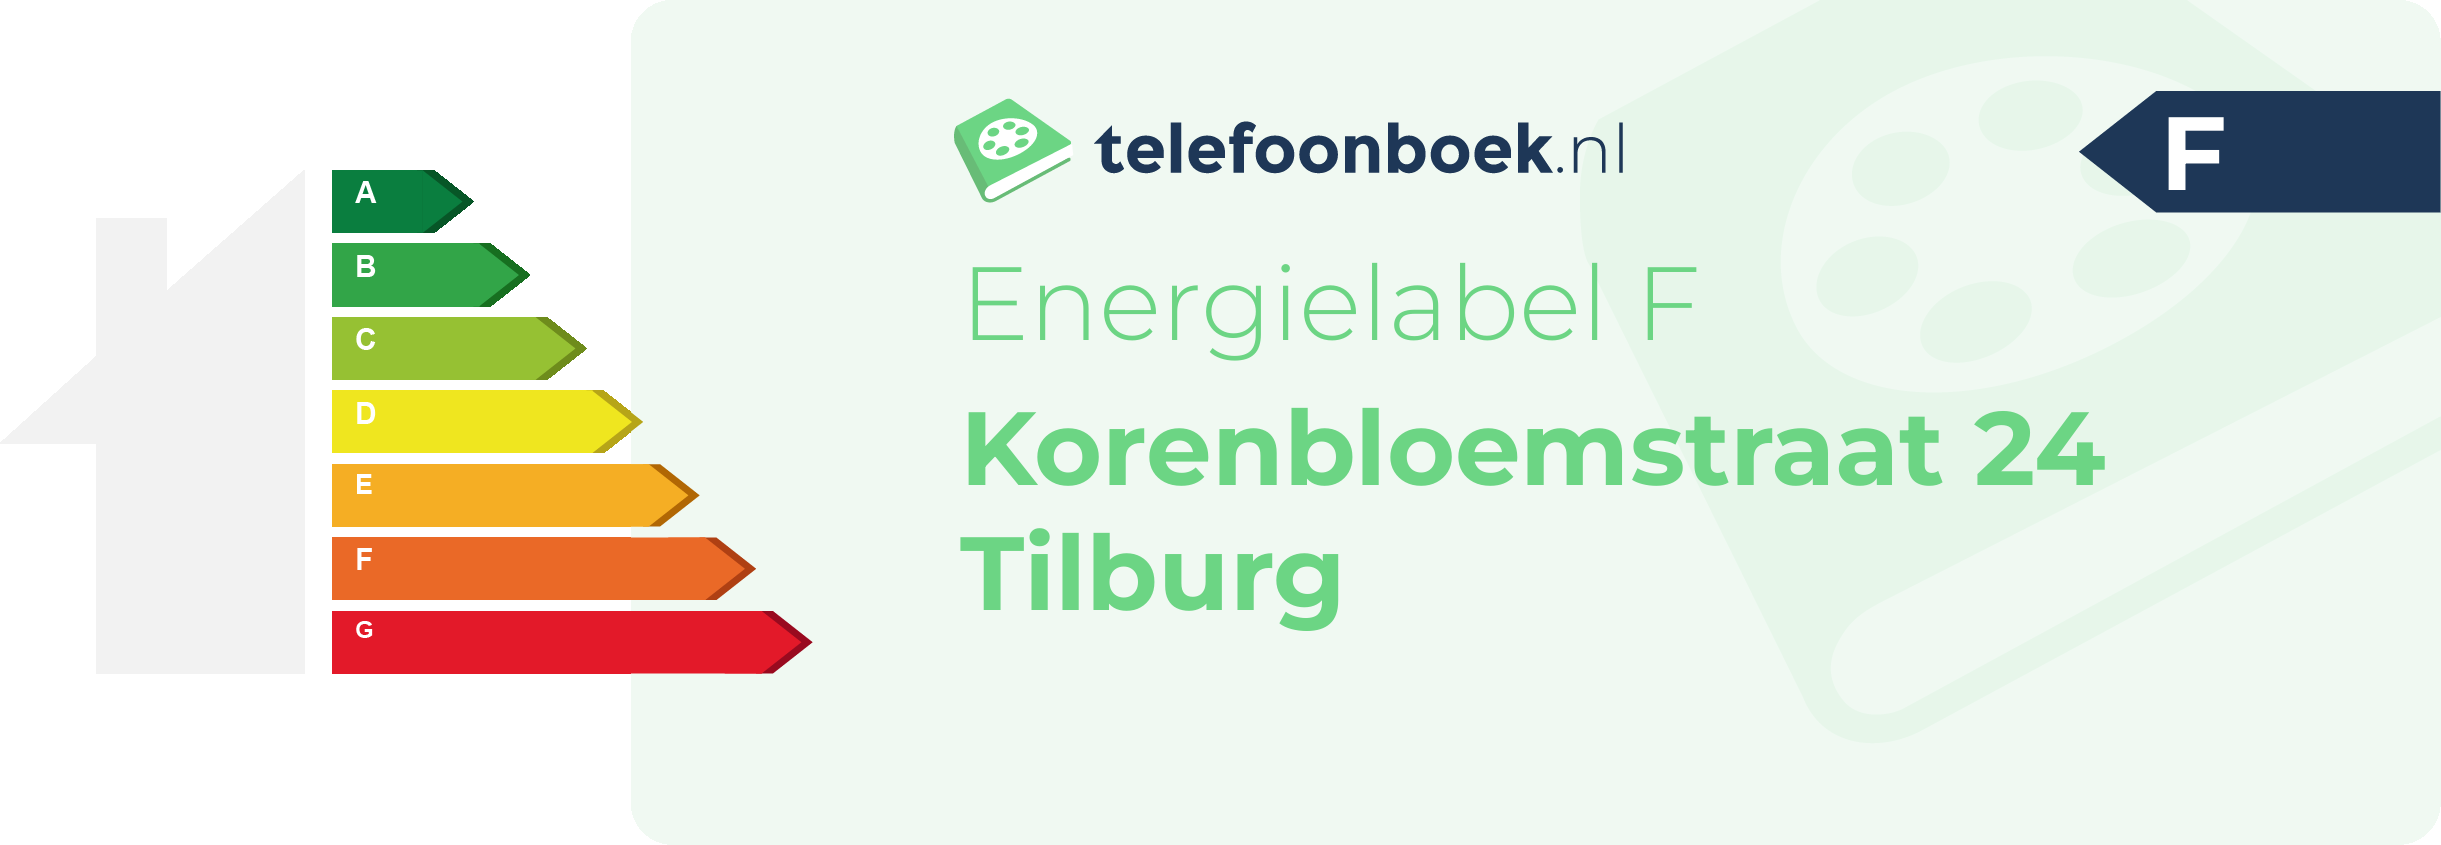 Energielabel Korenbloemstraat 24 Tilburg